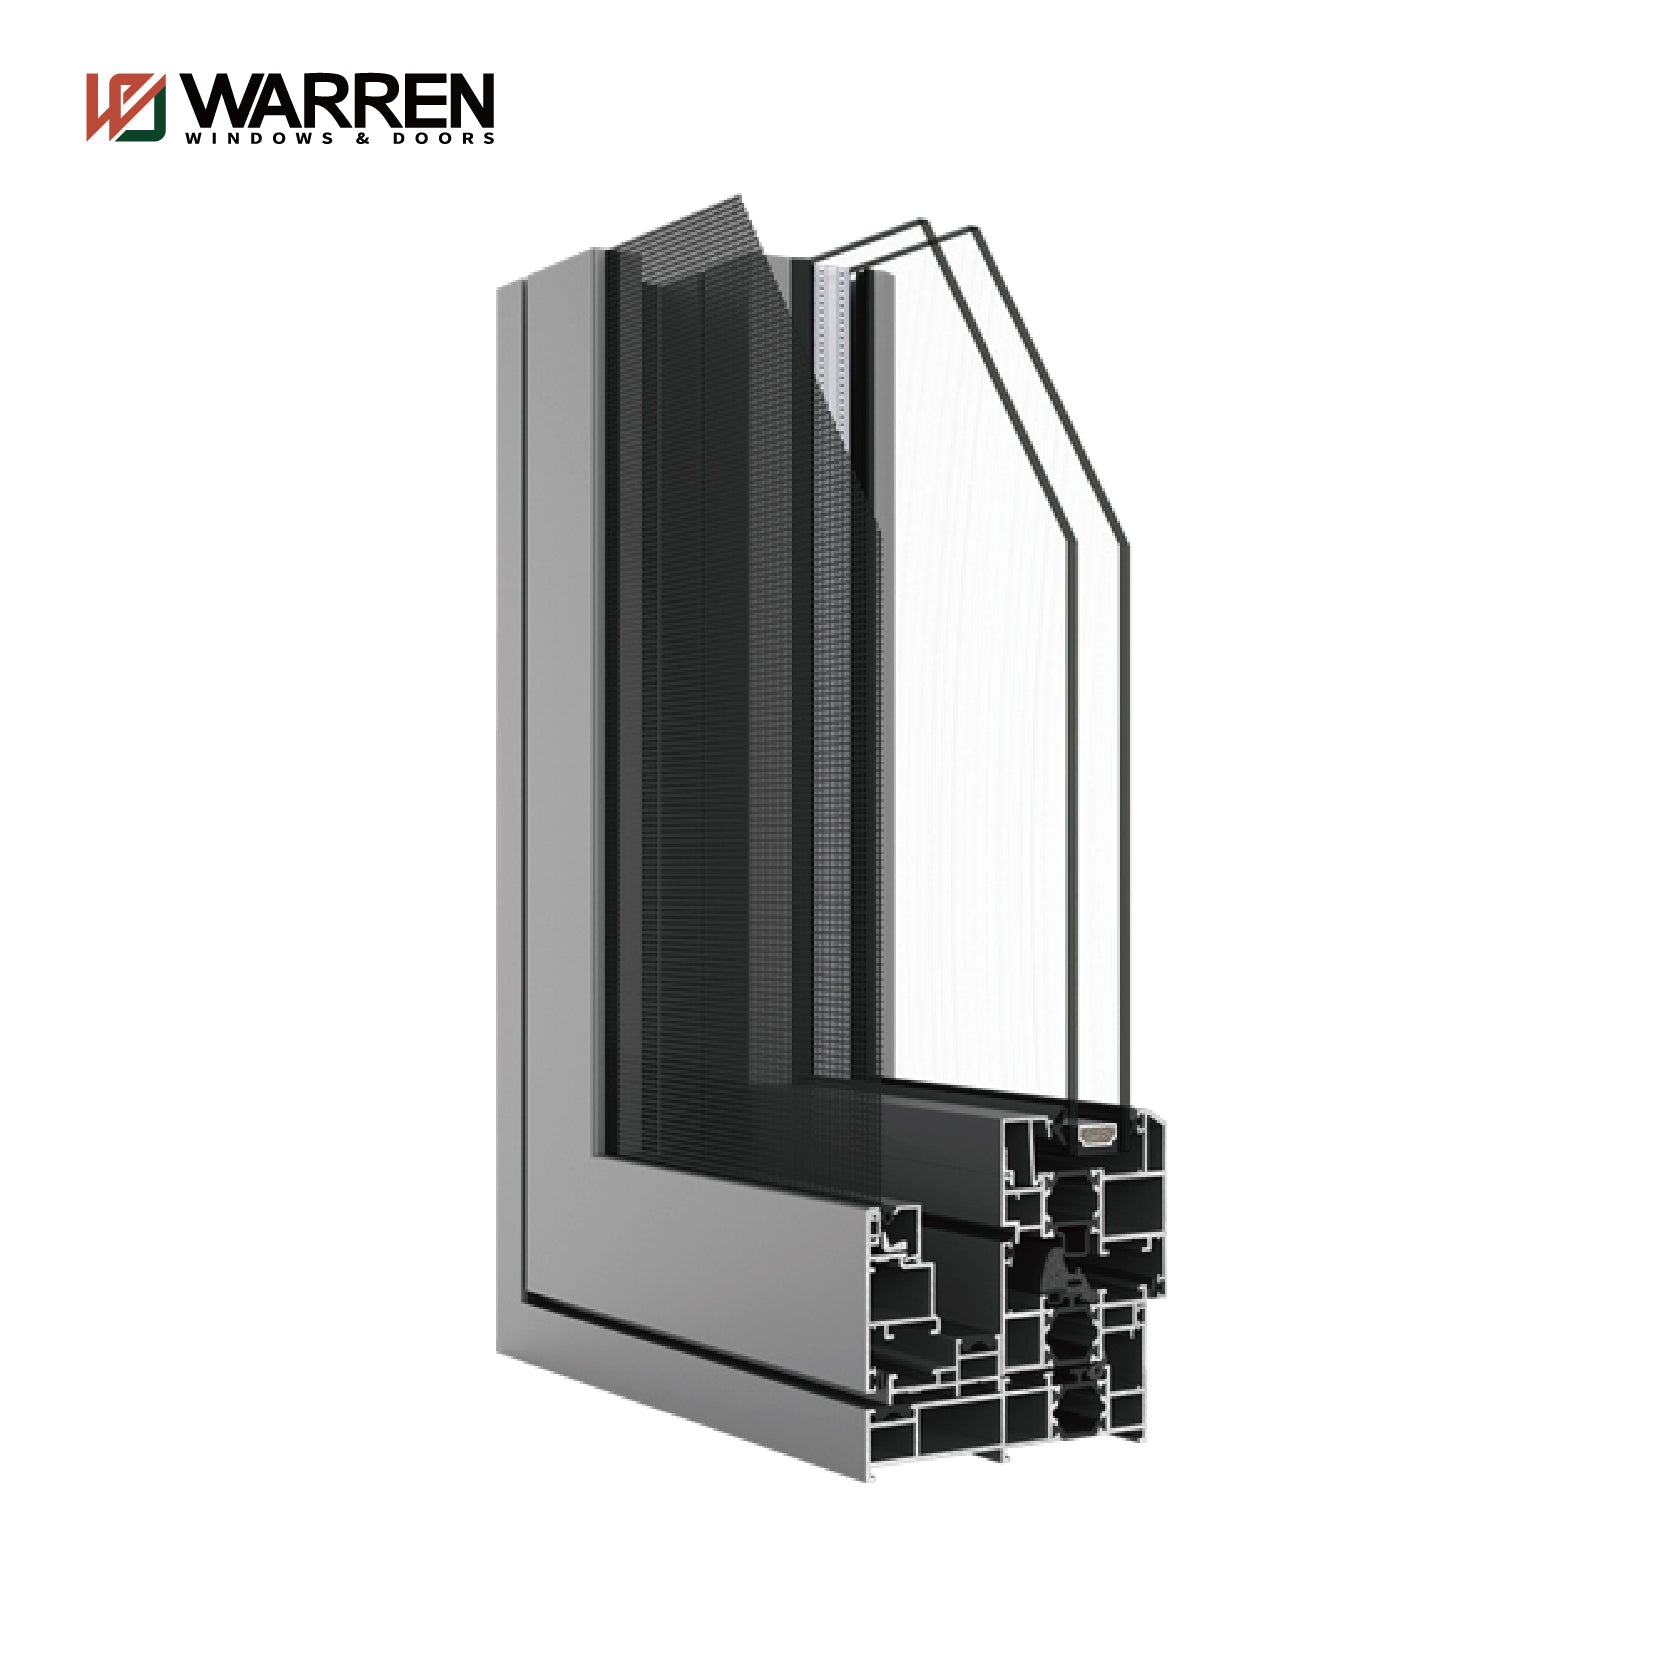 Warren Boston European Style Aluminum Profile Casement Windows And Door Sample